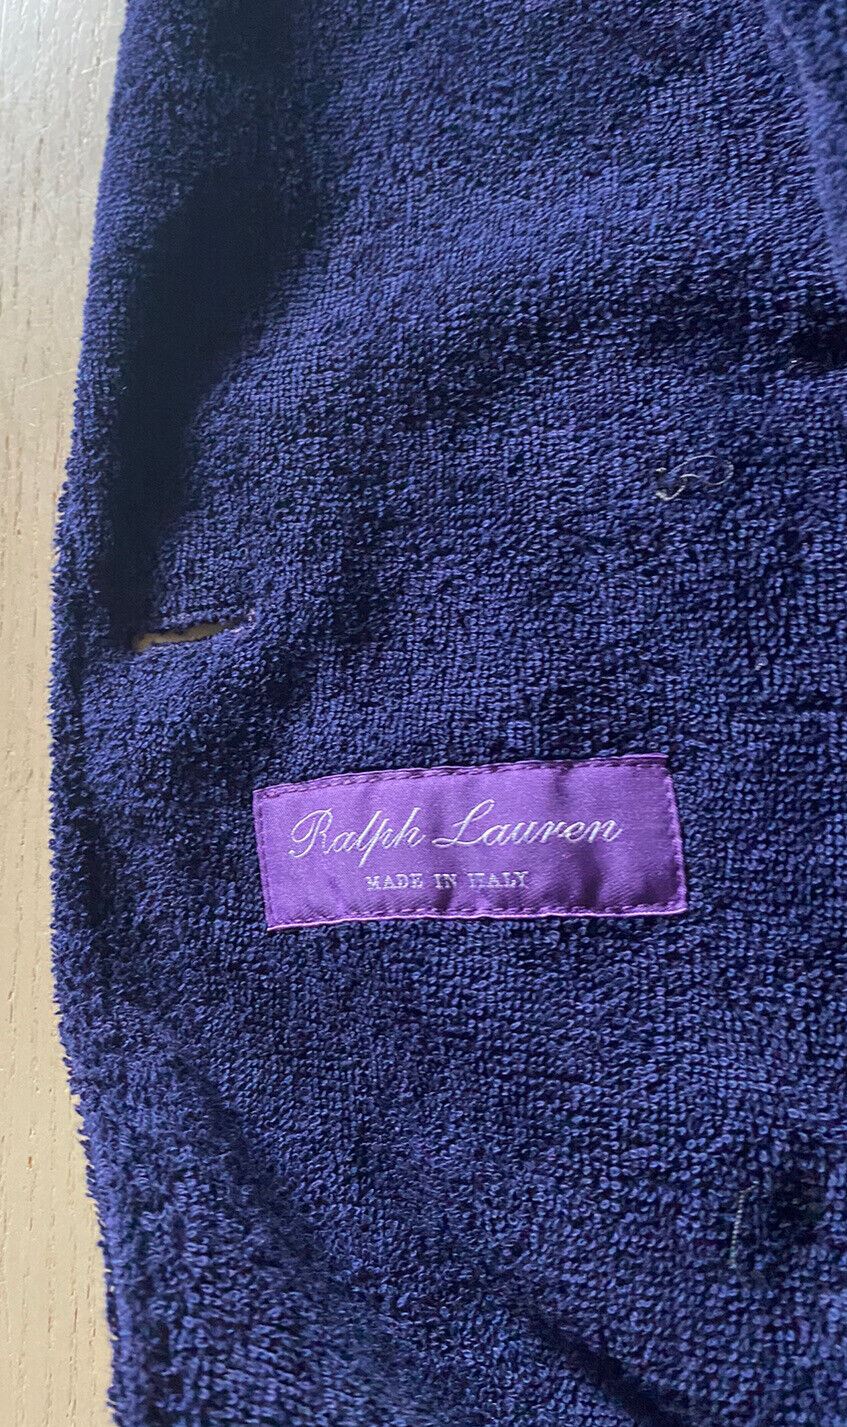 NWT Ralph Lauren Purple Label Men Blazer Jacket LT Navy 46 US/56 Eu Italy